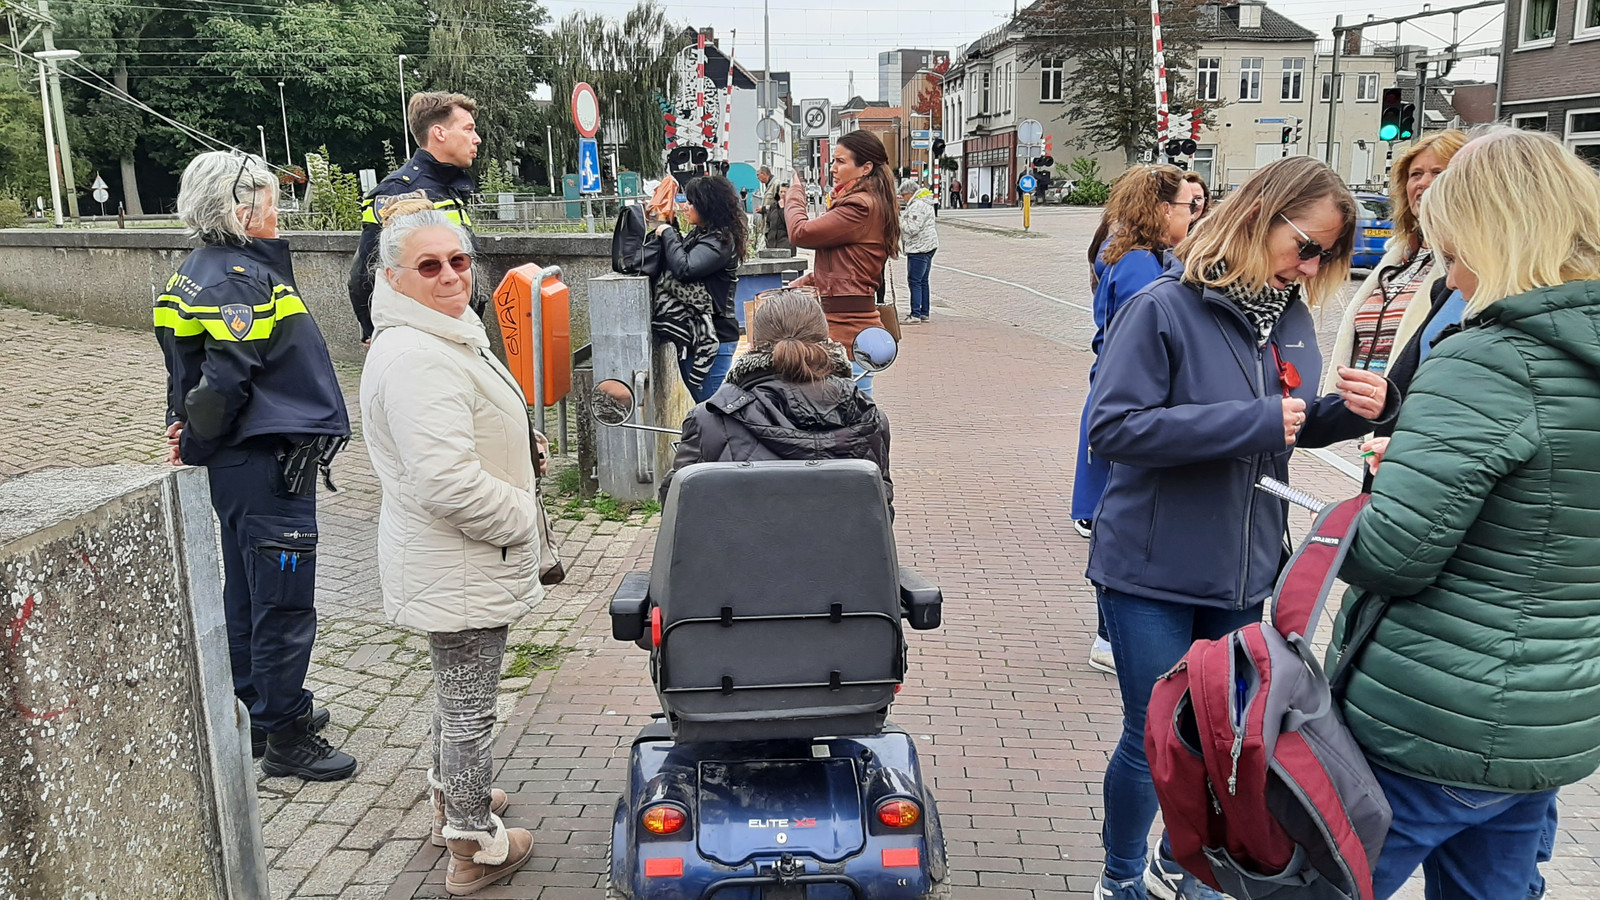 Protestwandeling tegen QR-codecheck in Roosendaal. Agenten van politie leggen uit welke route moet worden gelopen.